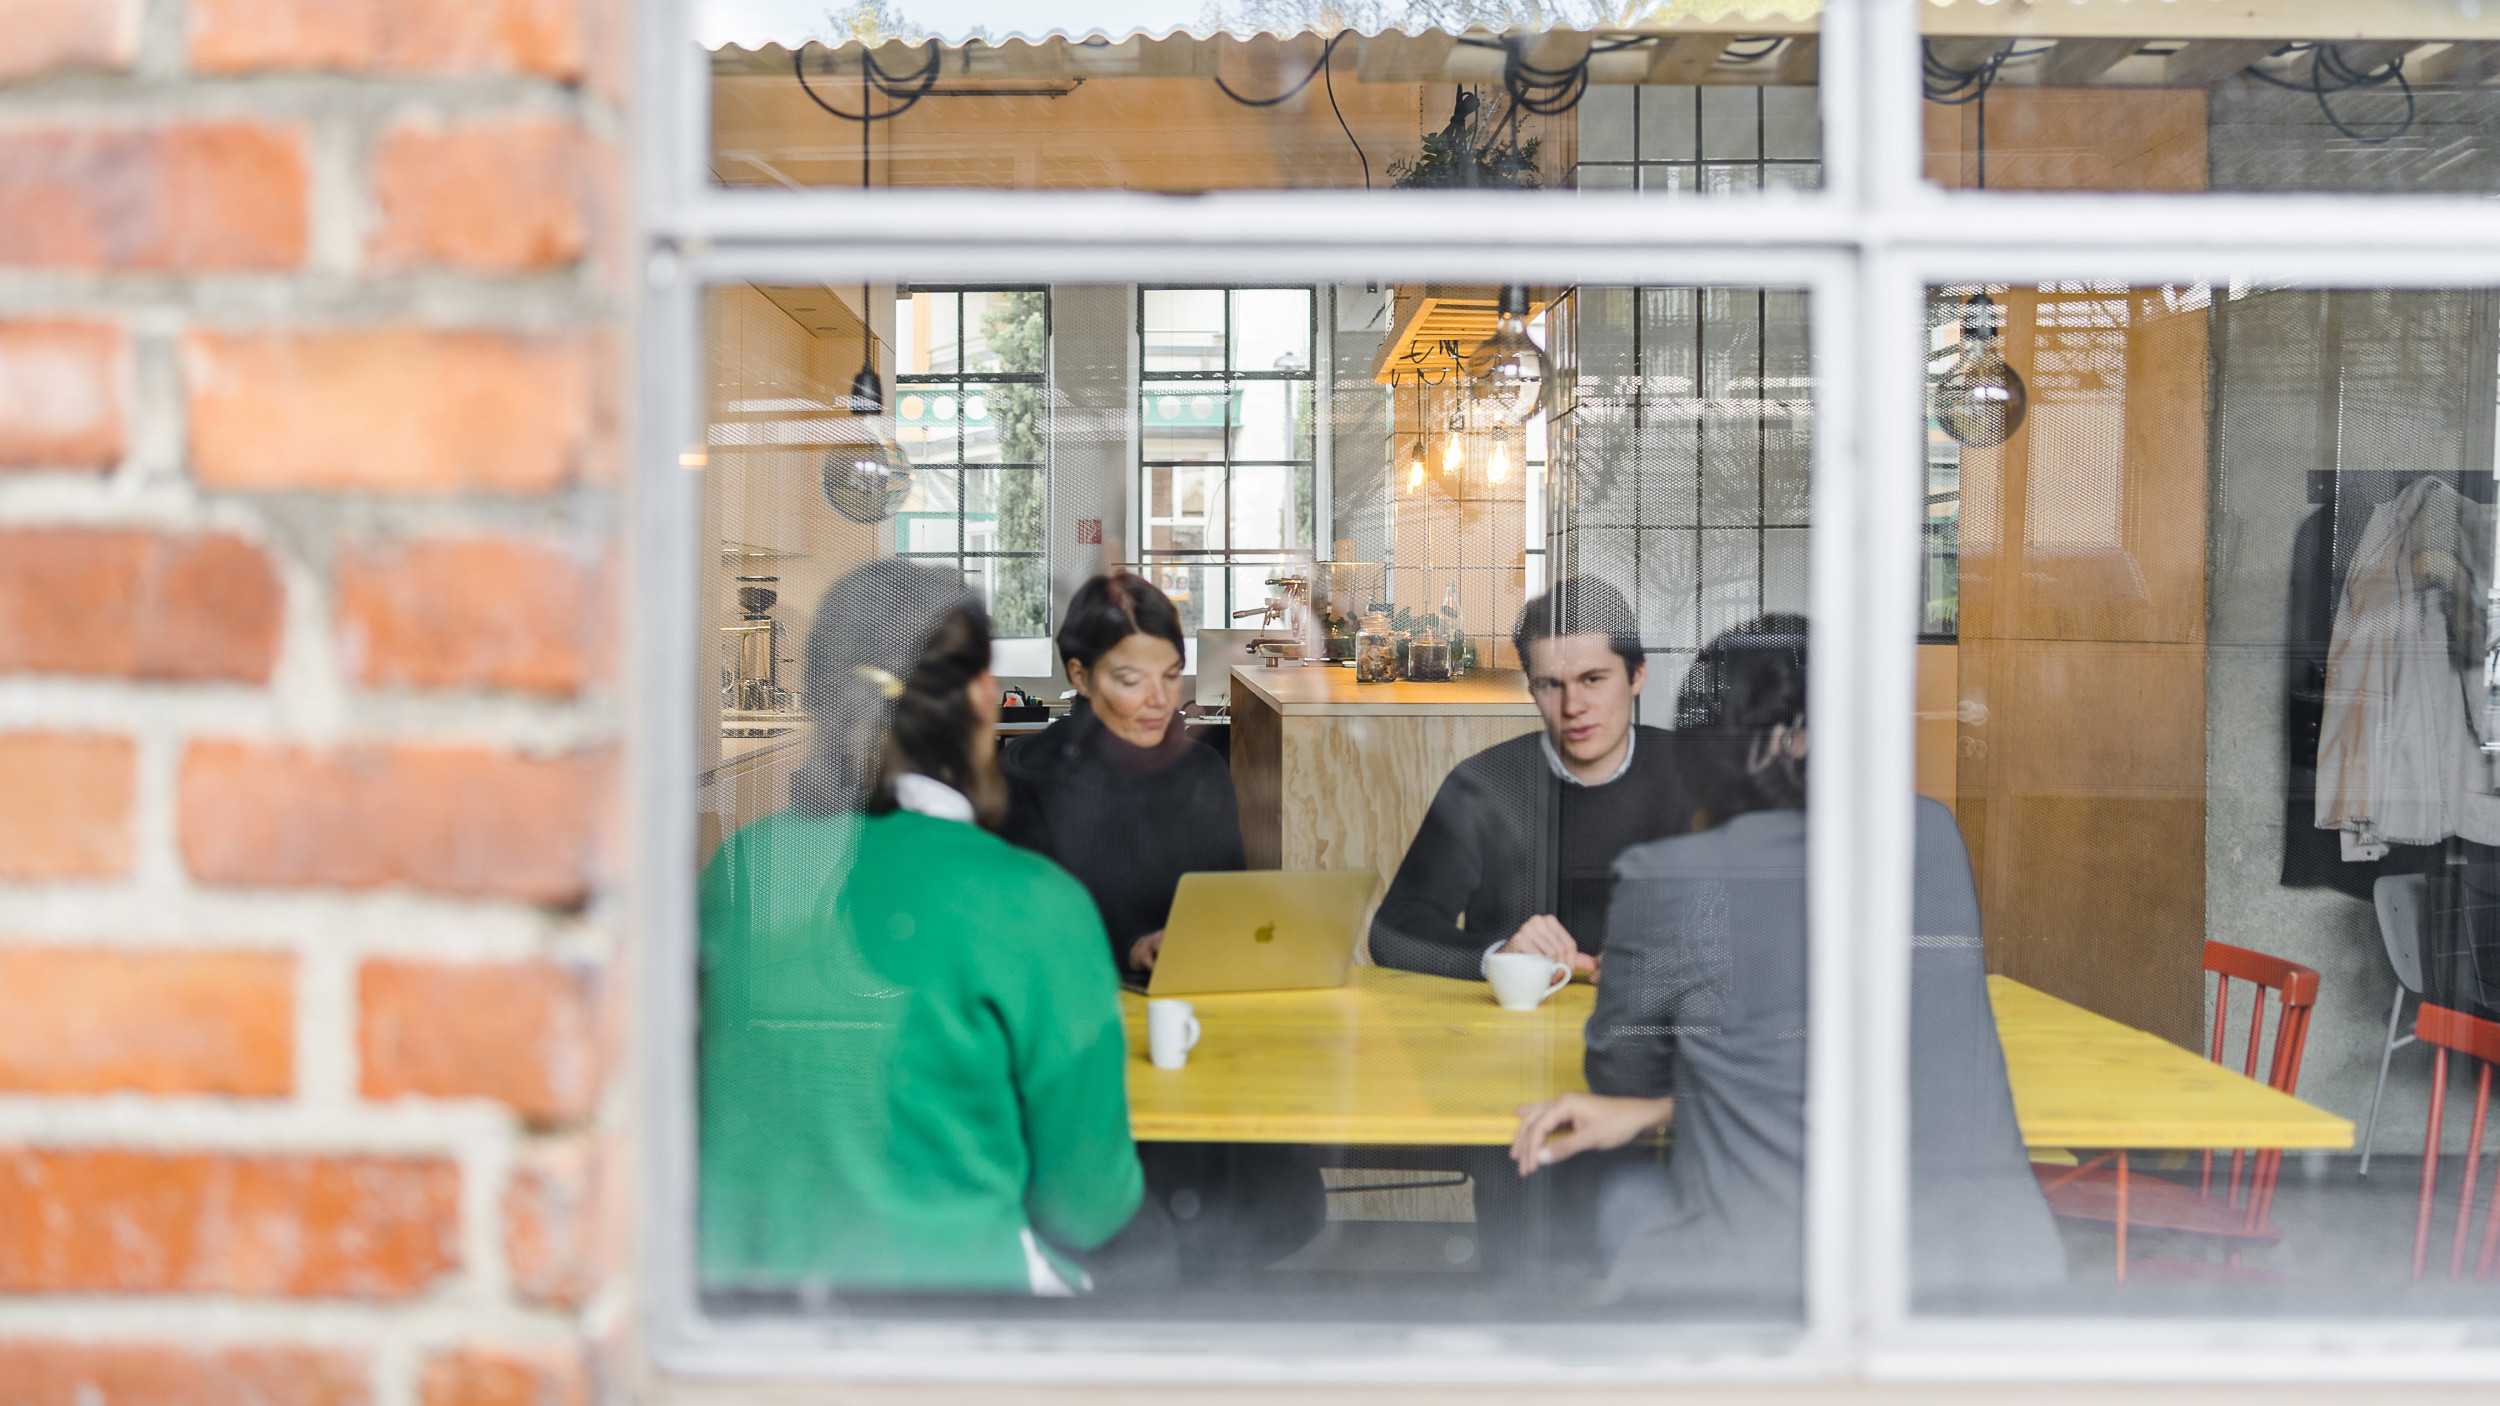 Außenperspektive zeigt den Blick in den Pausenraum, wo vier Mitarbeitende zusammen an einem gelben Tisch sitzen.